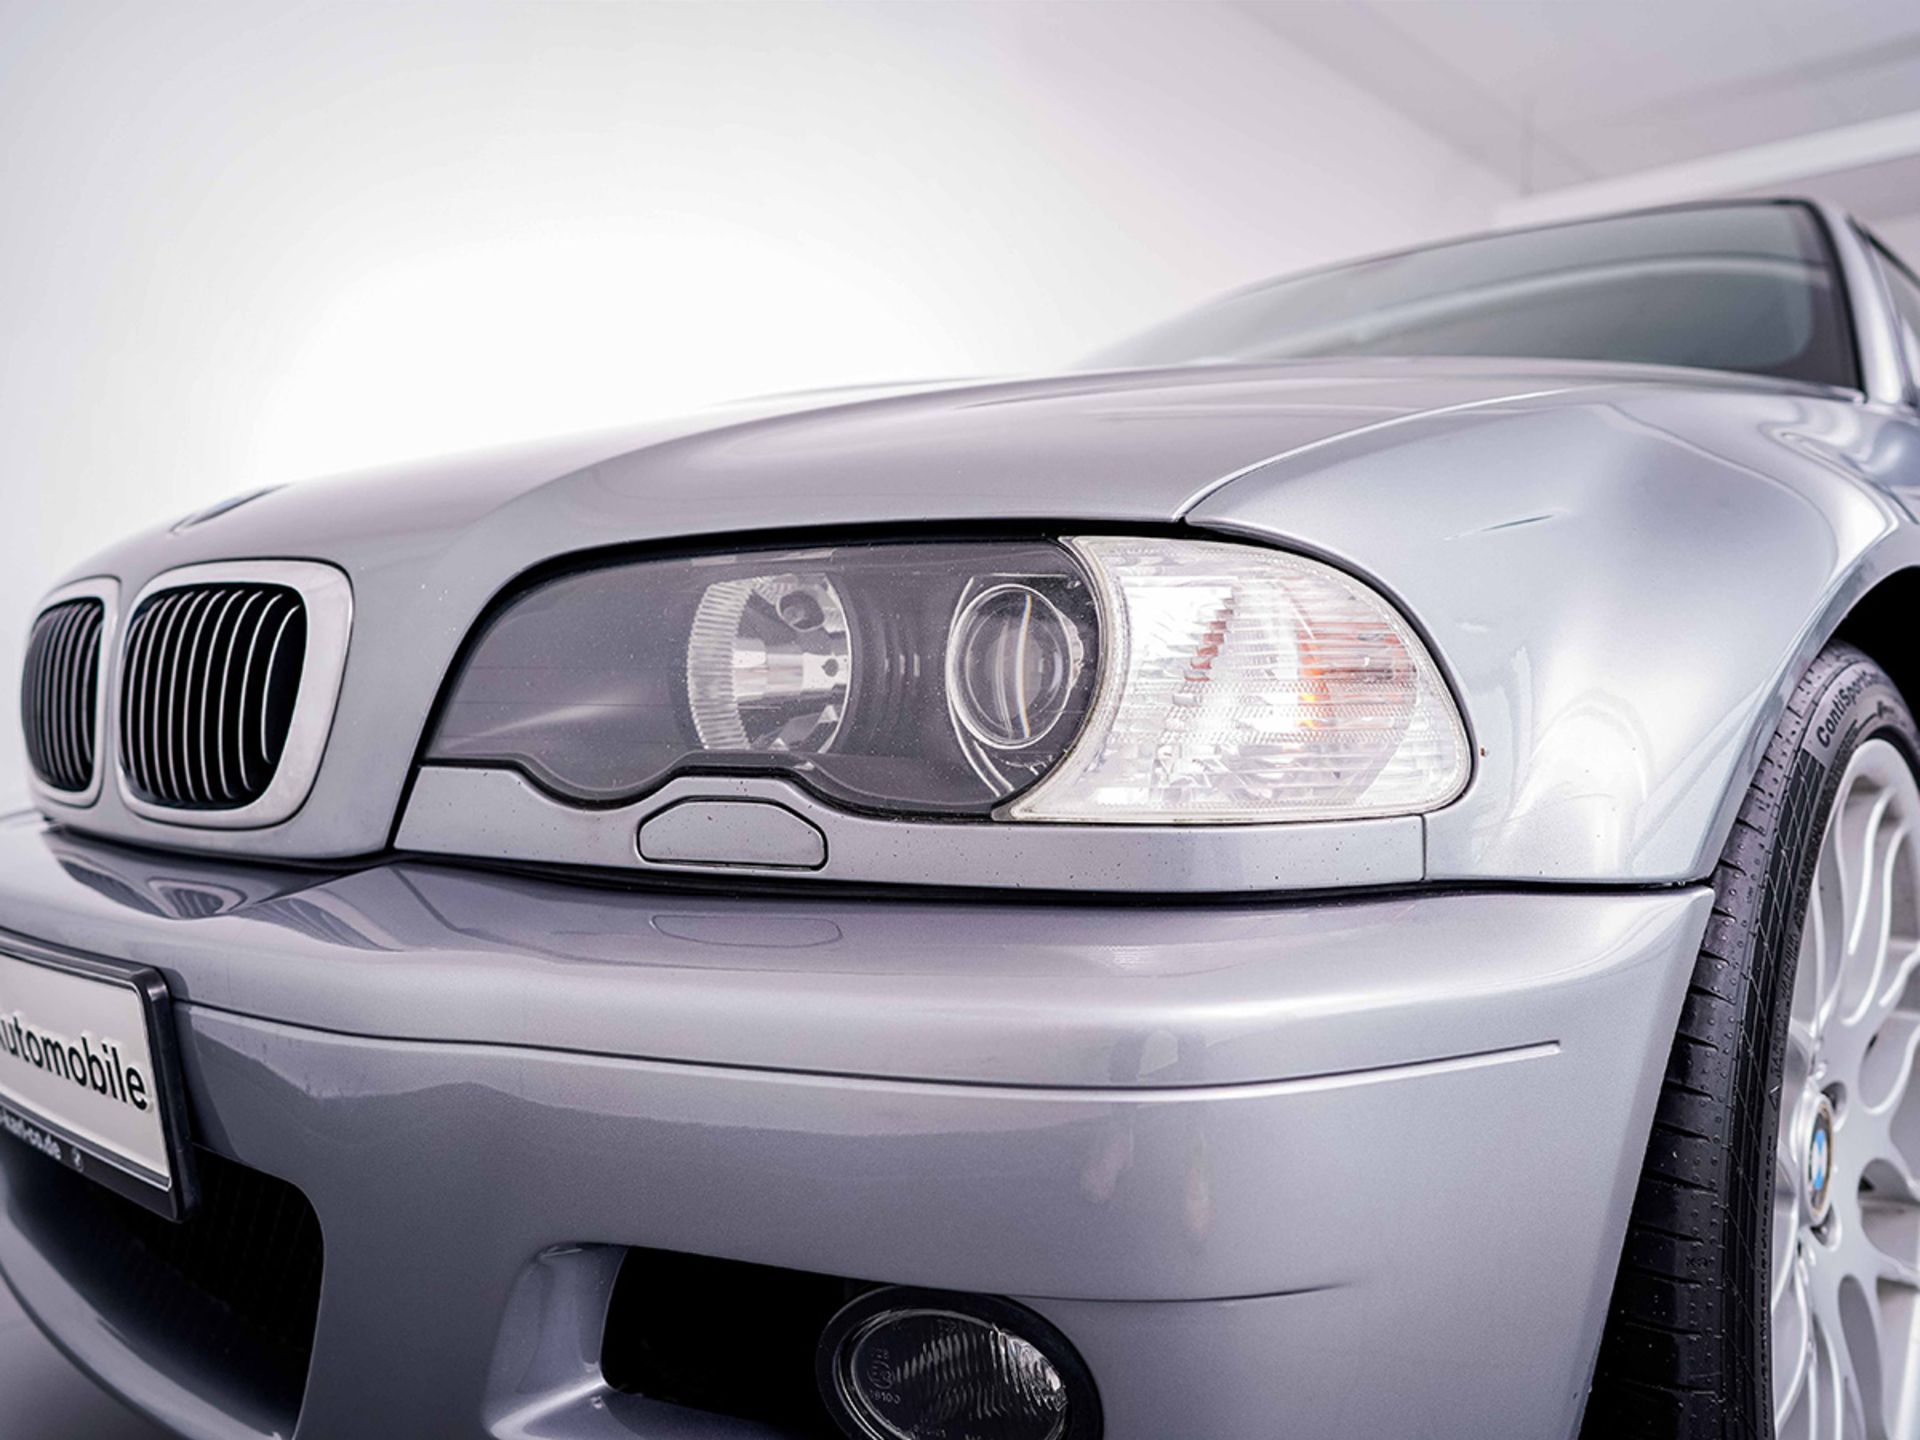 BMW M3 Coupe (E46) Competition Paket, (3,3l) 3246ccm - Bild 3 aus 14